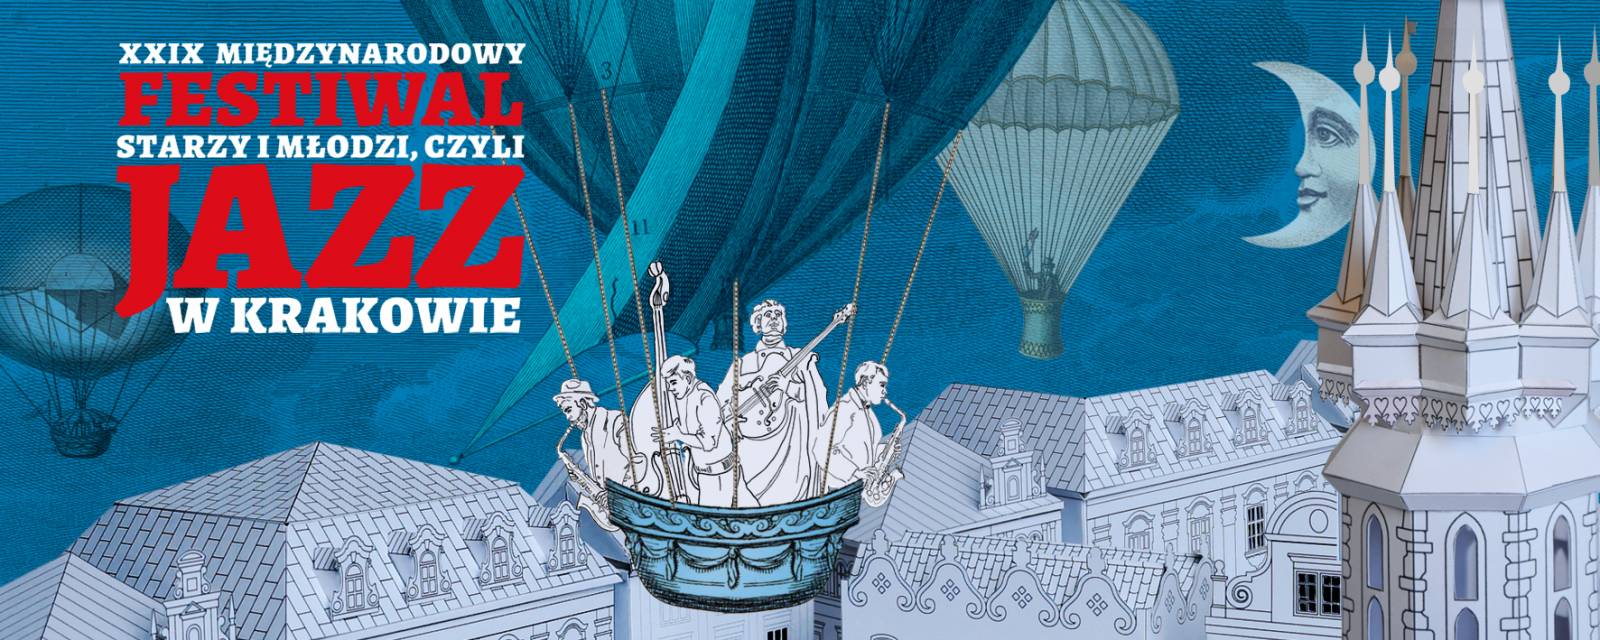 XXIX Międzynarodowy Festiwal „Starzy i Młodzi, czyli Jazz w Krakowie”